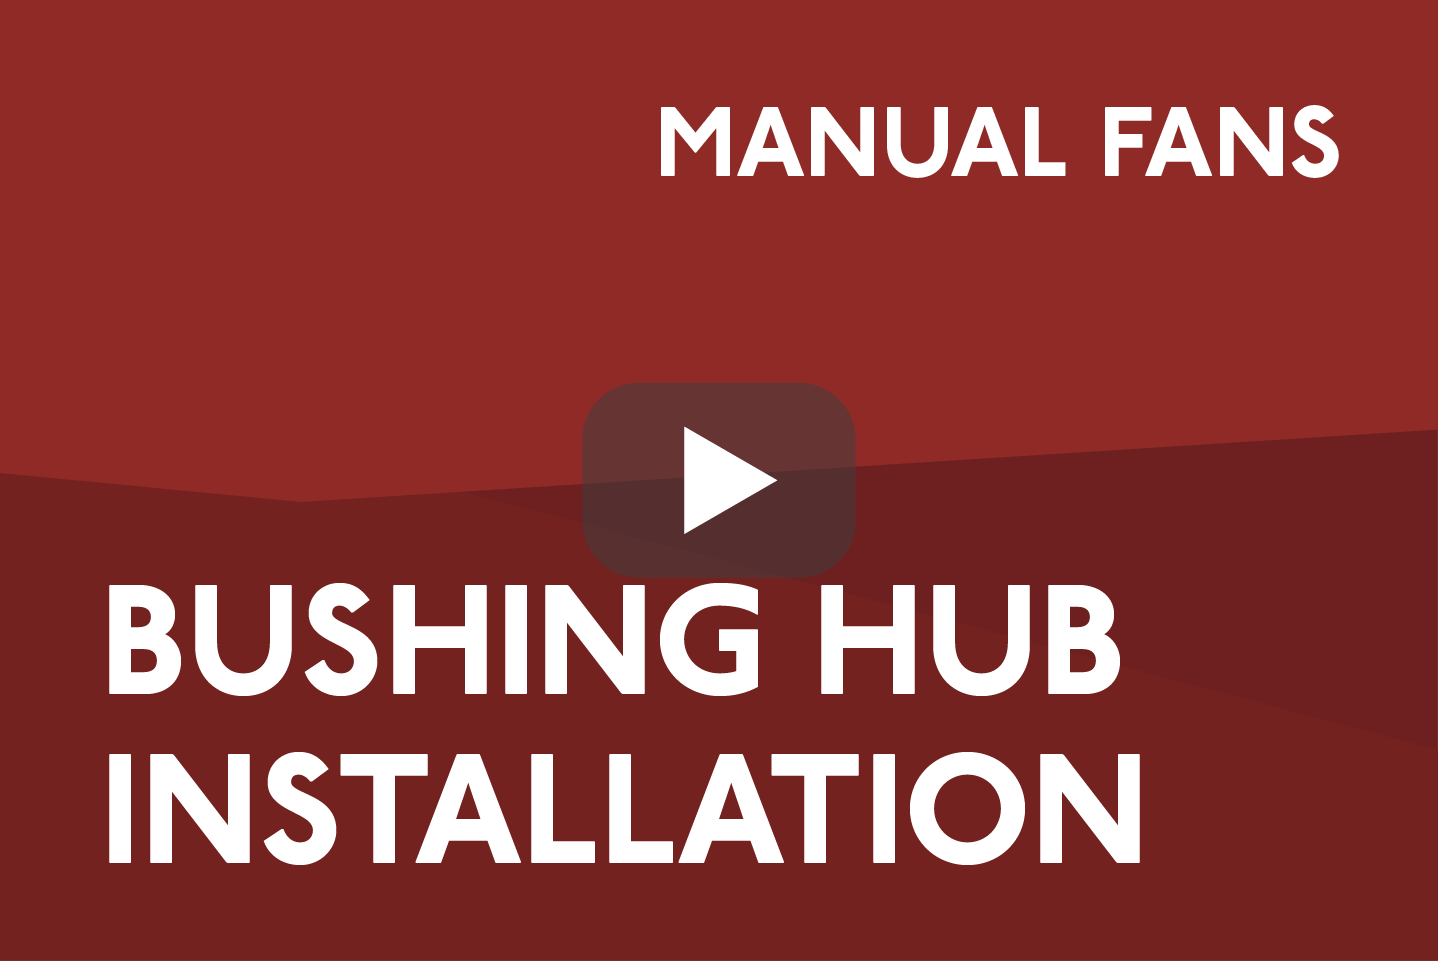 Bushing Hub Installation